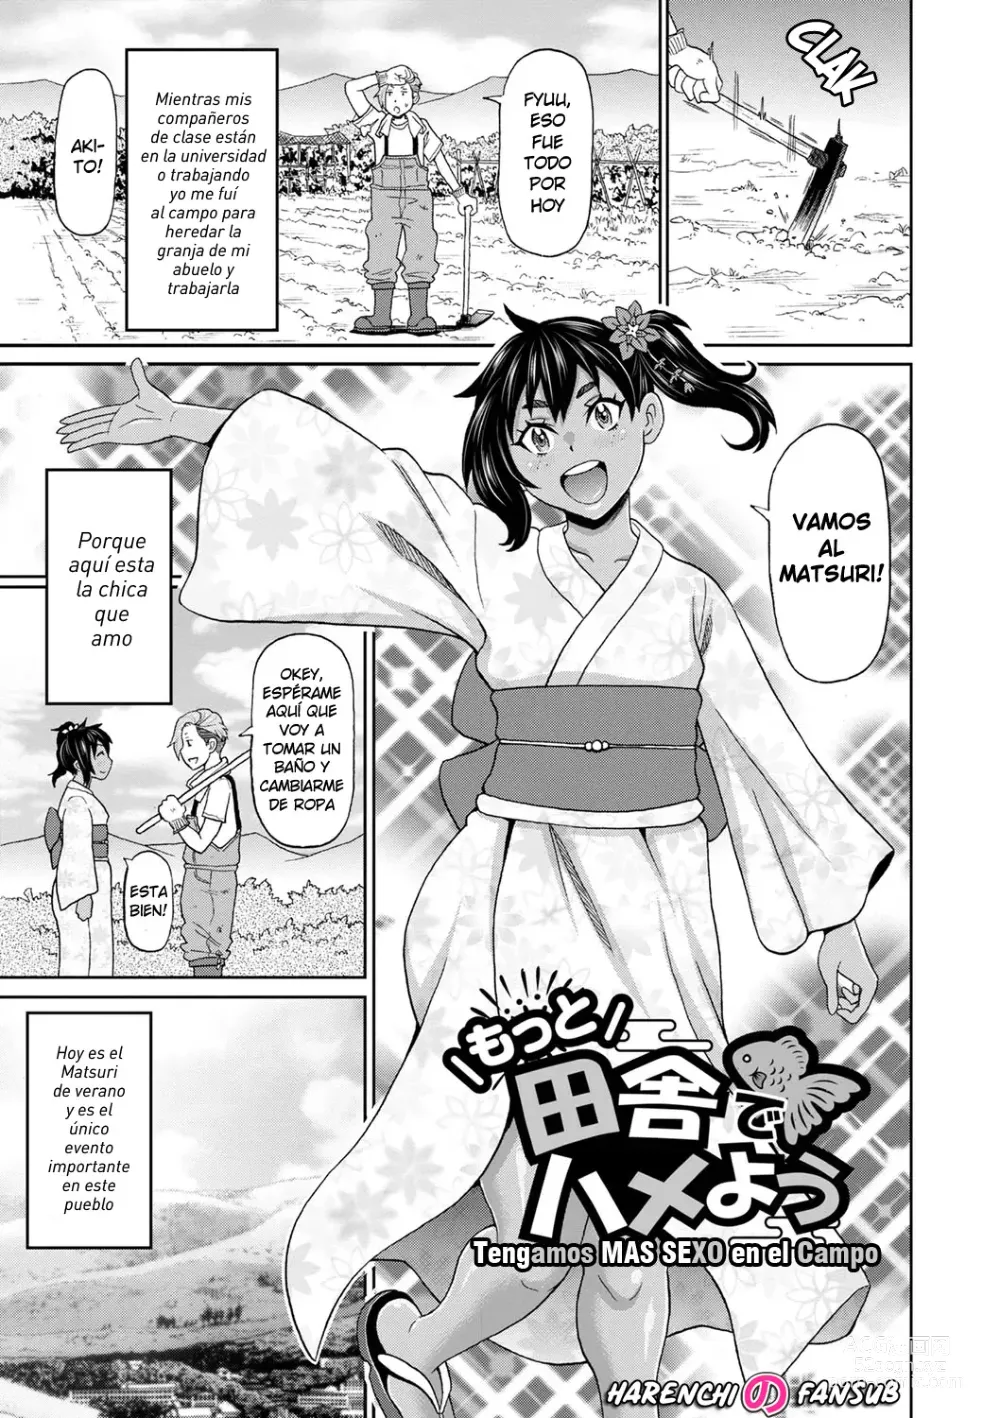 Page 1 of manga Tengamos Mas Sexo en el campo (decensored)